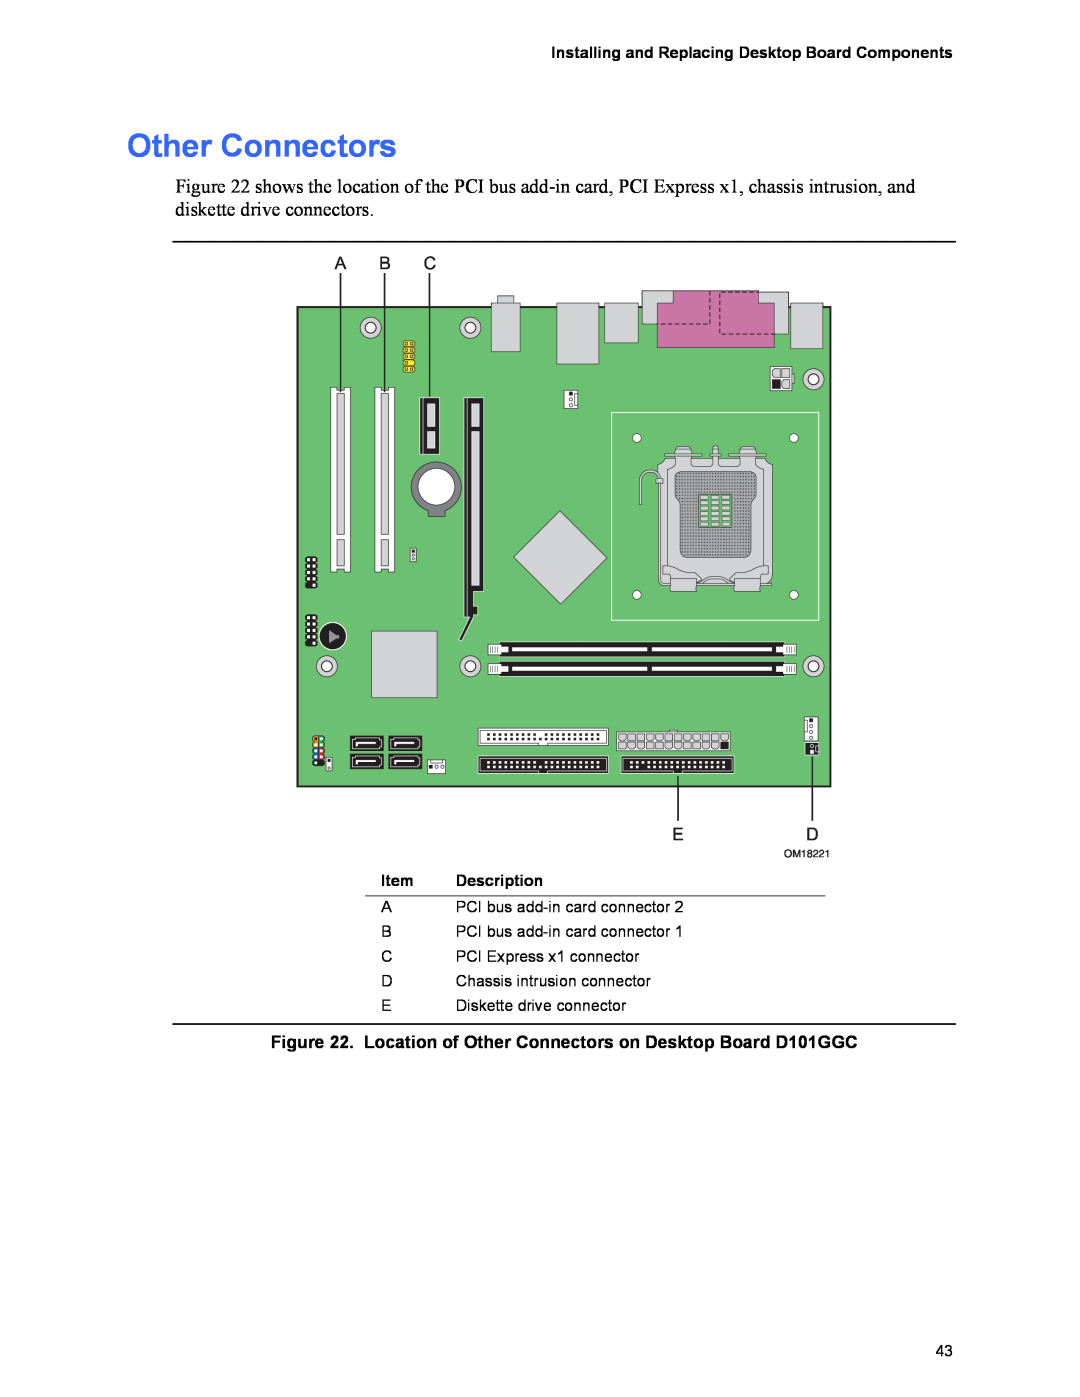 Intel D101GGC manual Other Connectors, Item, Description, OM18221 